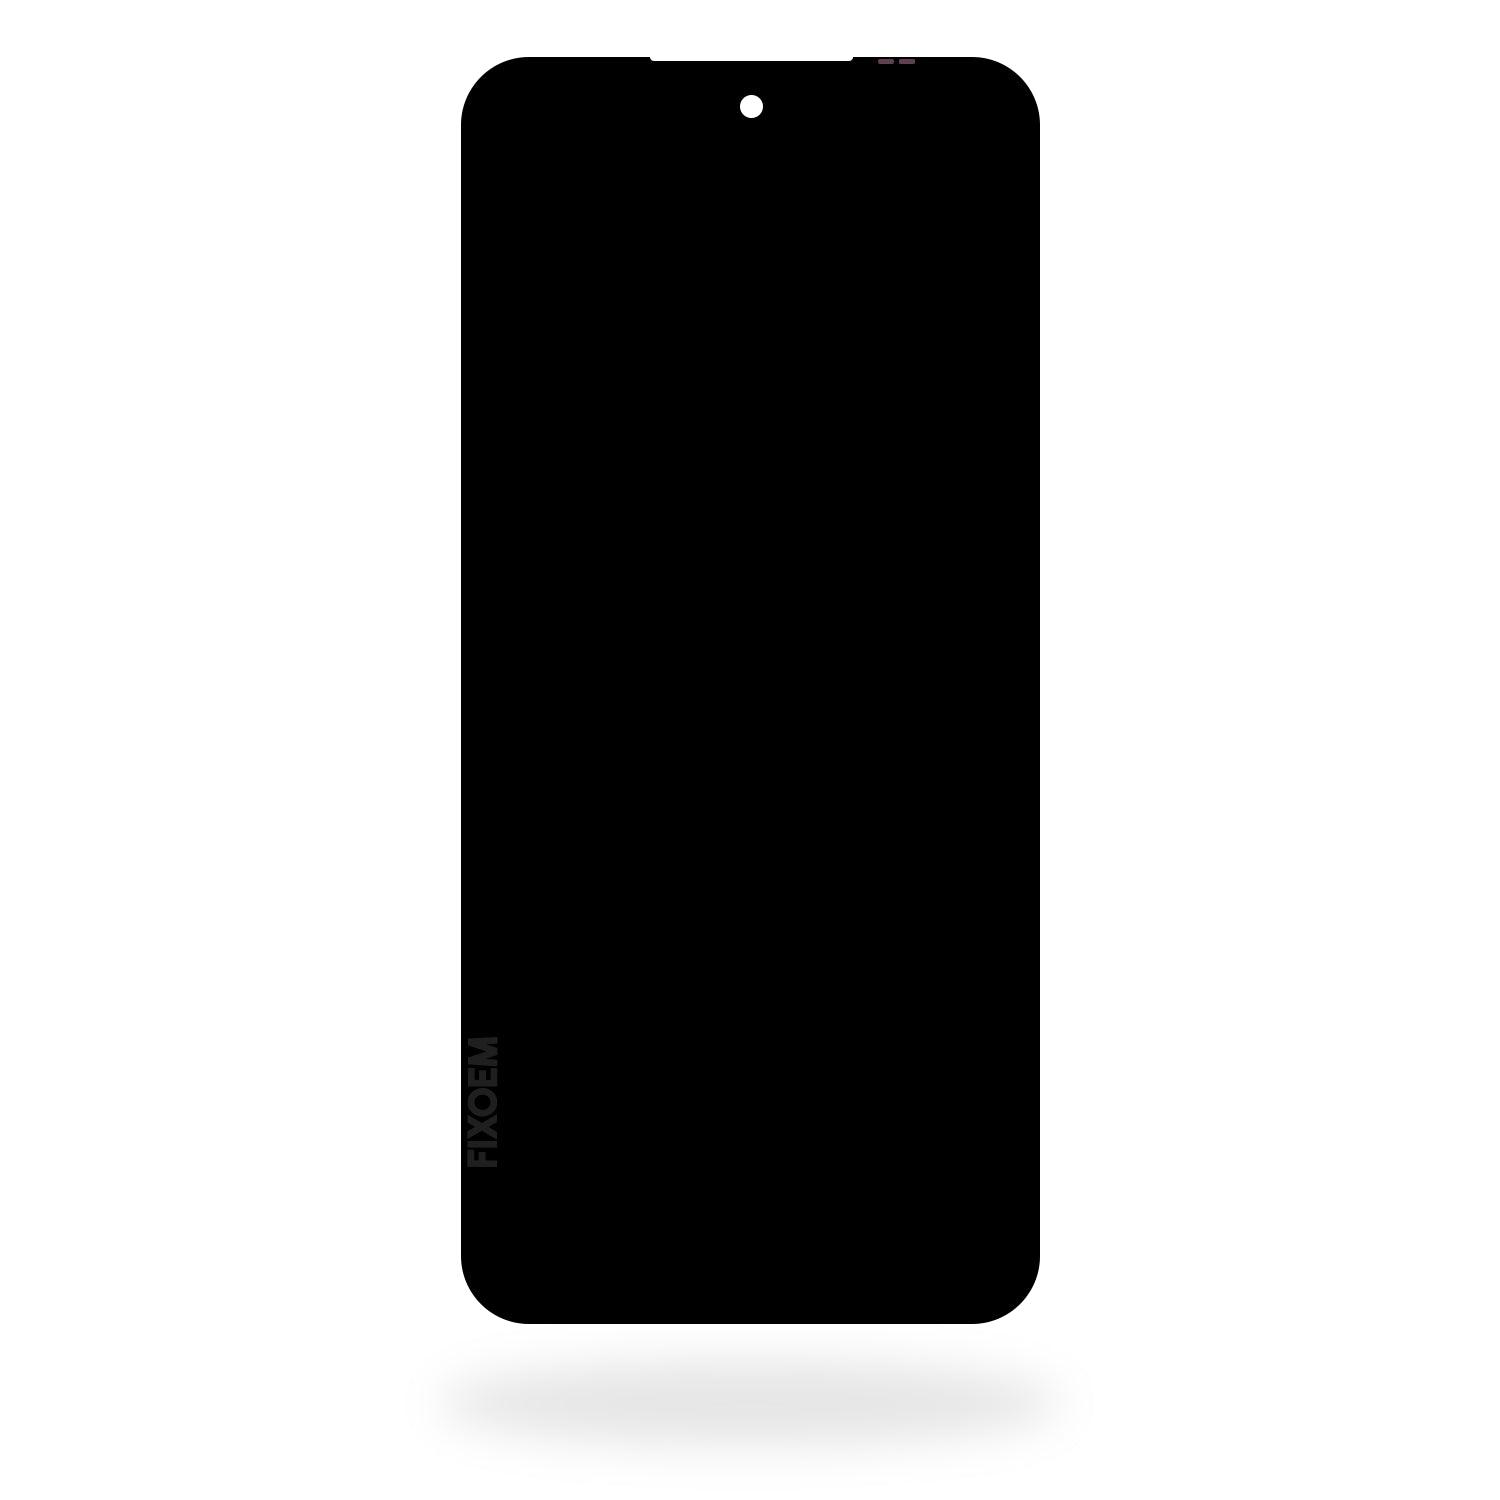 Display Xiaomi Redmi 10 / Redmi 10 Prime 21061119al a solo $ 260.00 Refaccion y puestos celulares, refurbish y microelectronica.- FixOEM